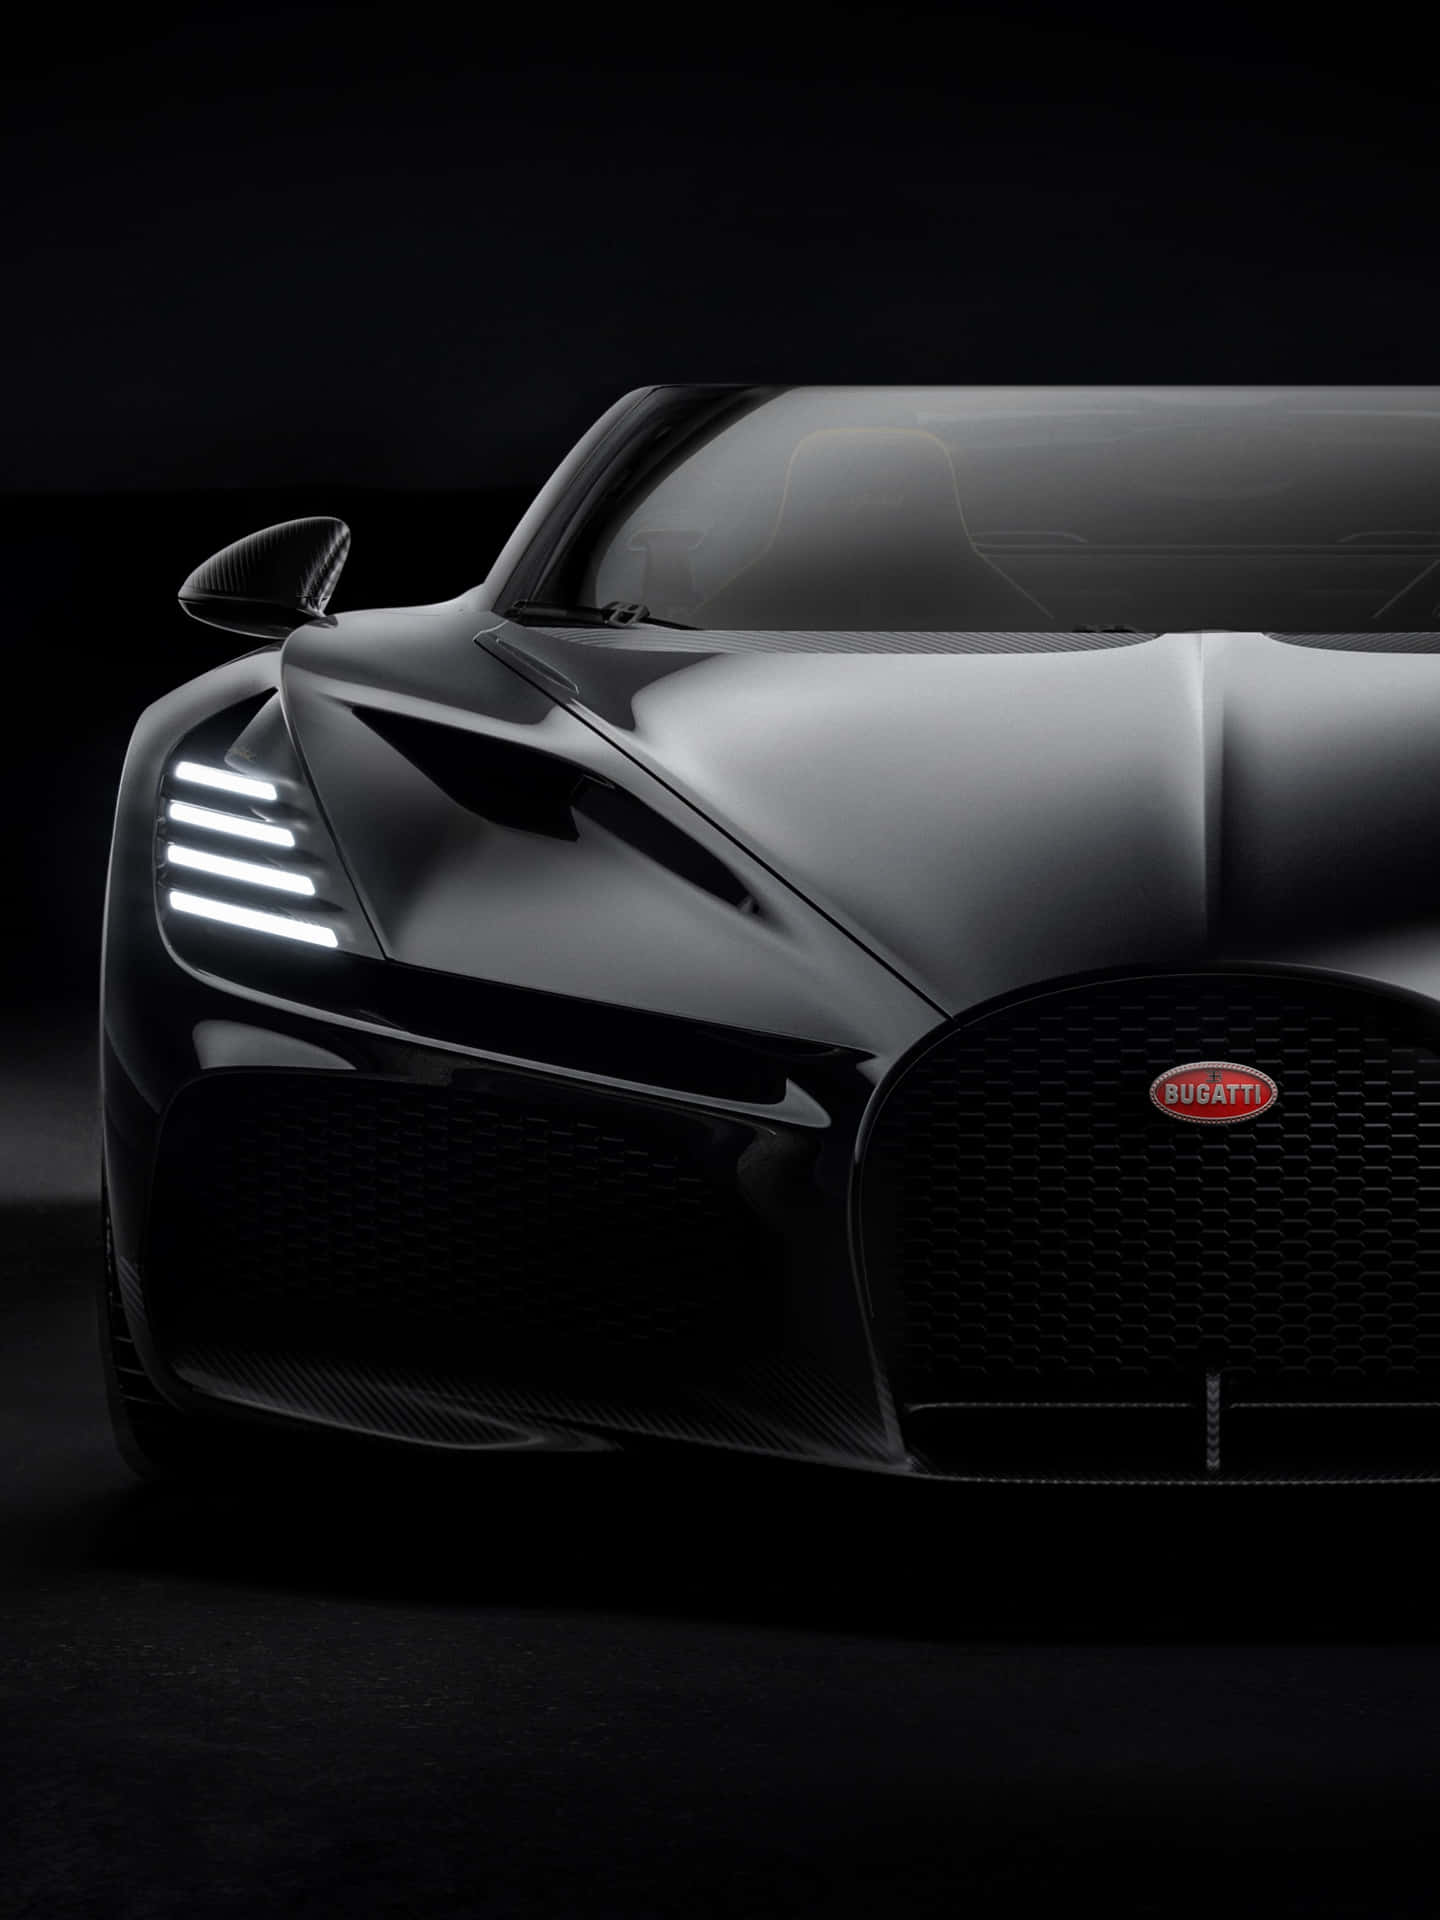 Oplev hastighed med Bugatti-telefonen Wallpaper